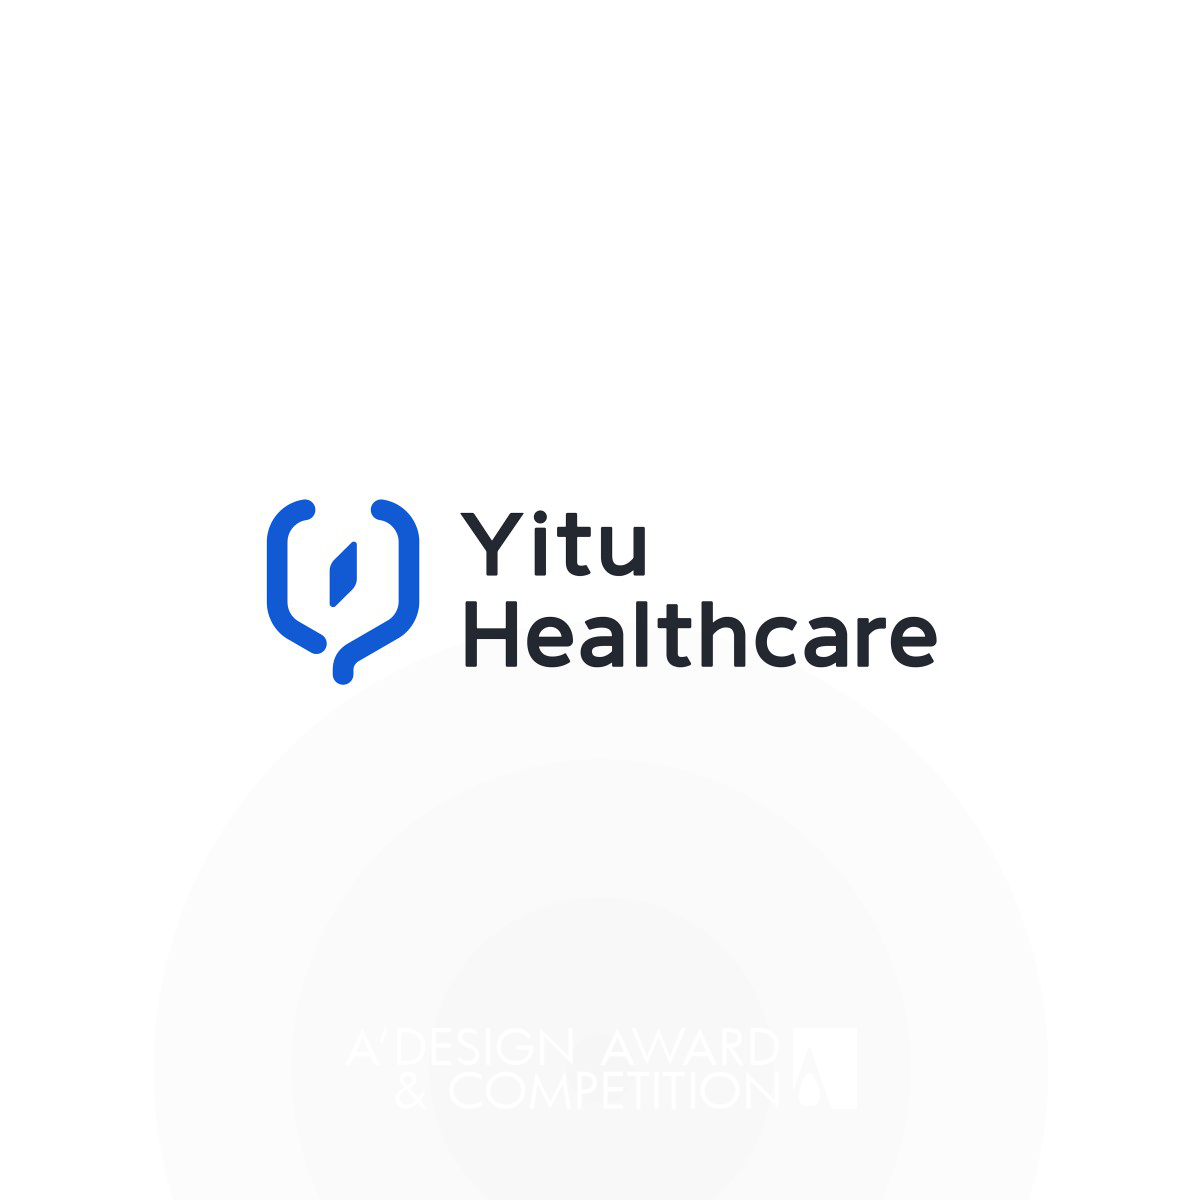 Yitu Healthcare  Branding Design by Zhe MA, Xianjun HUANG